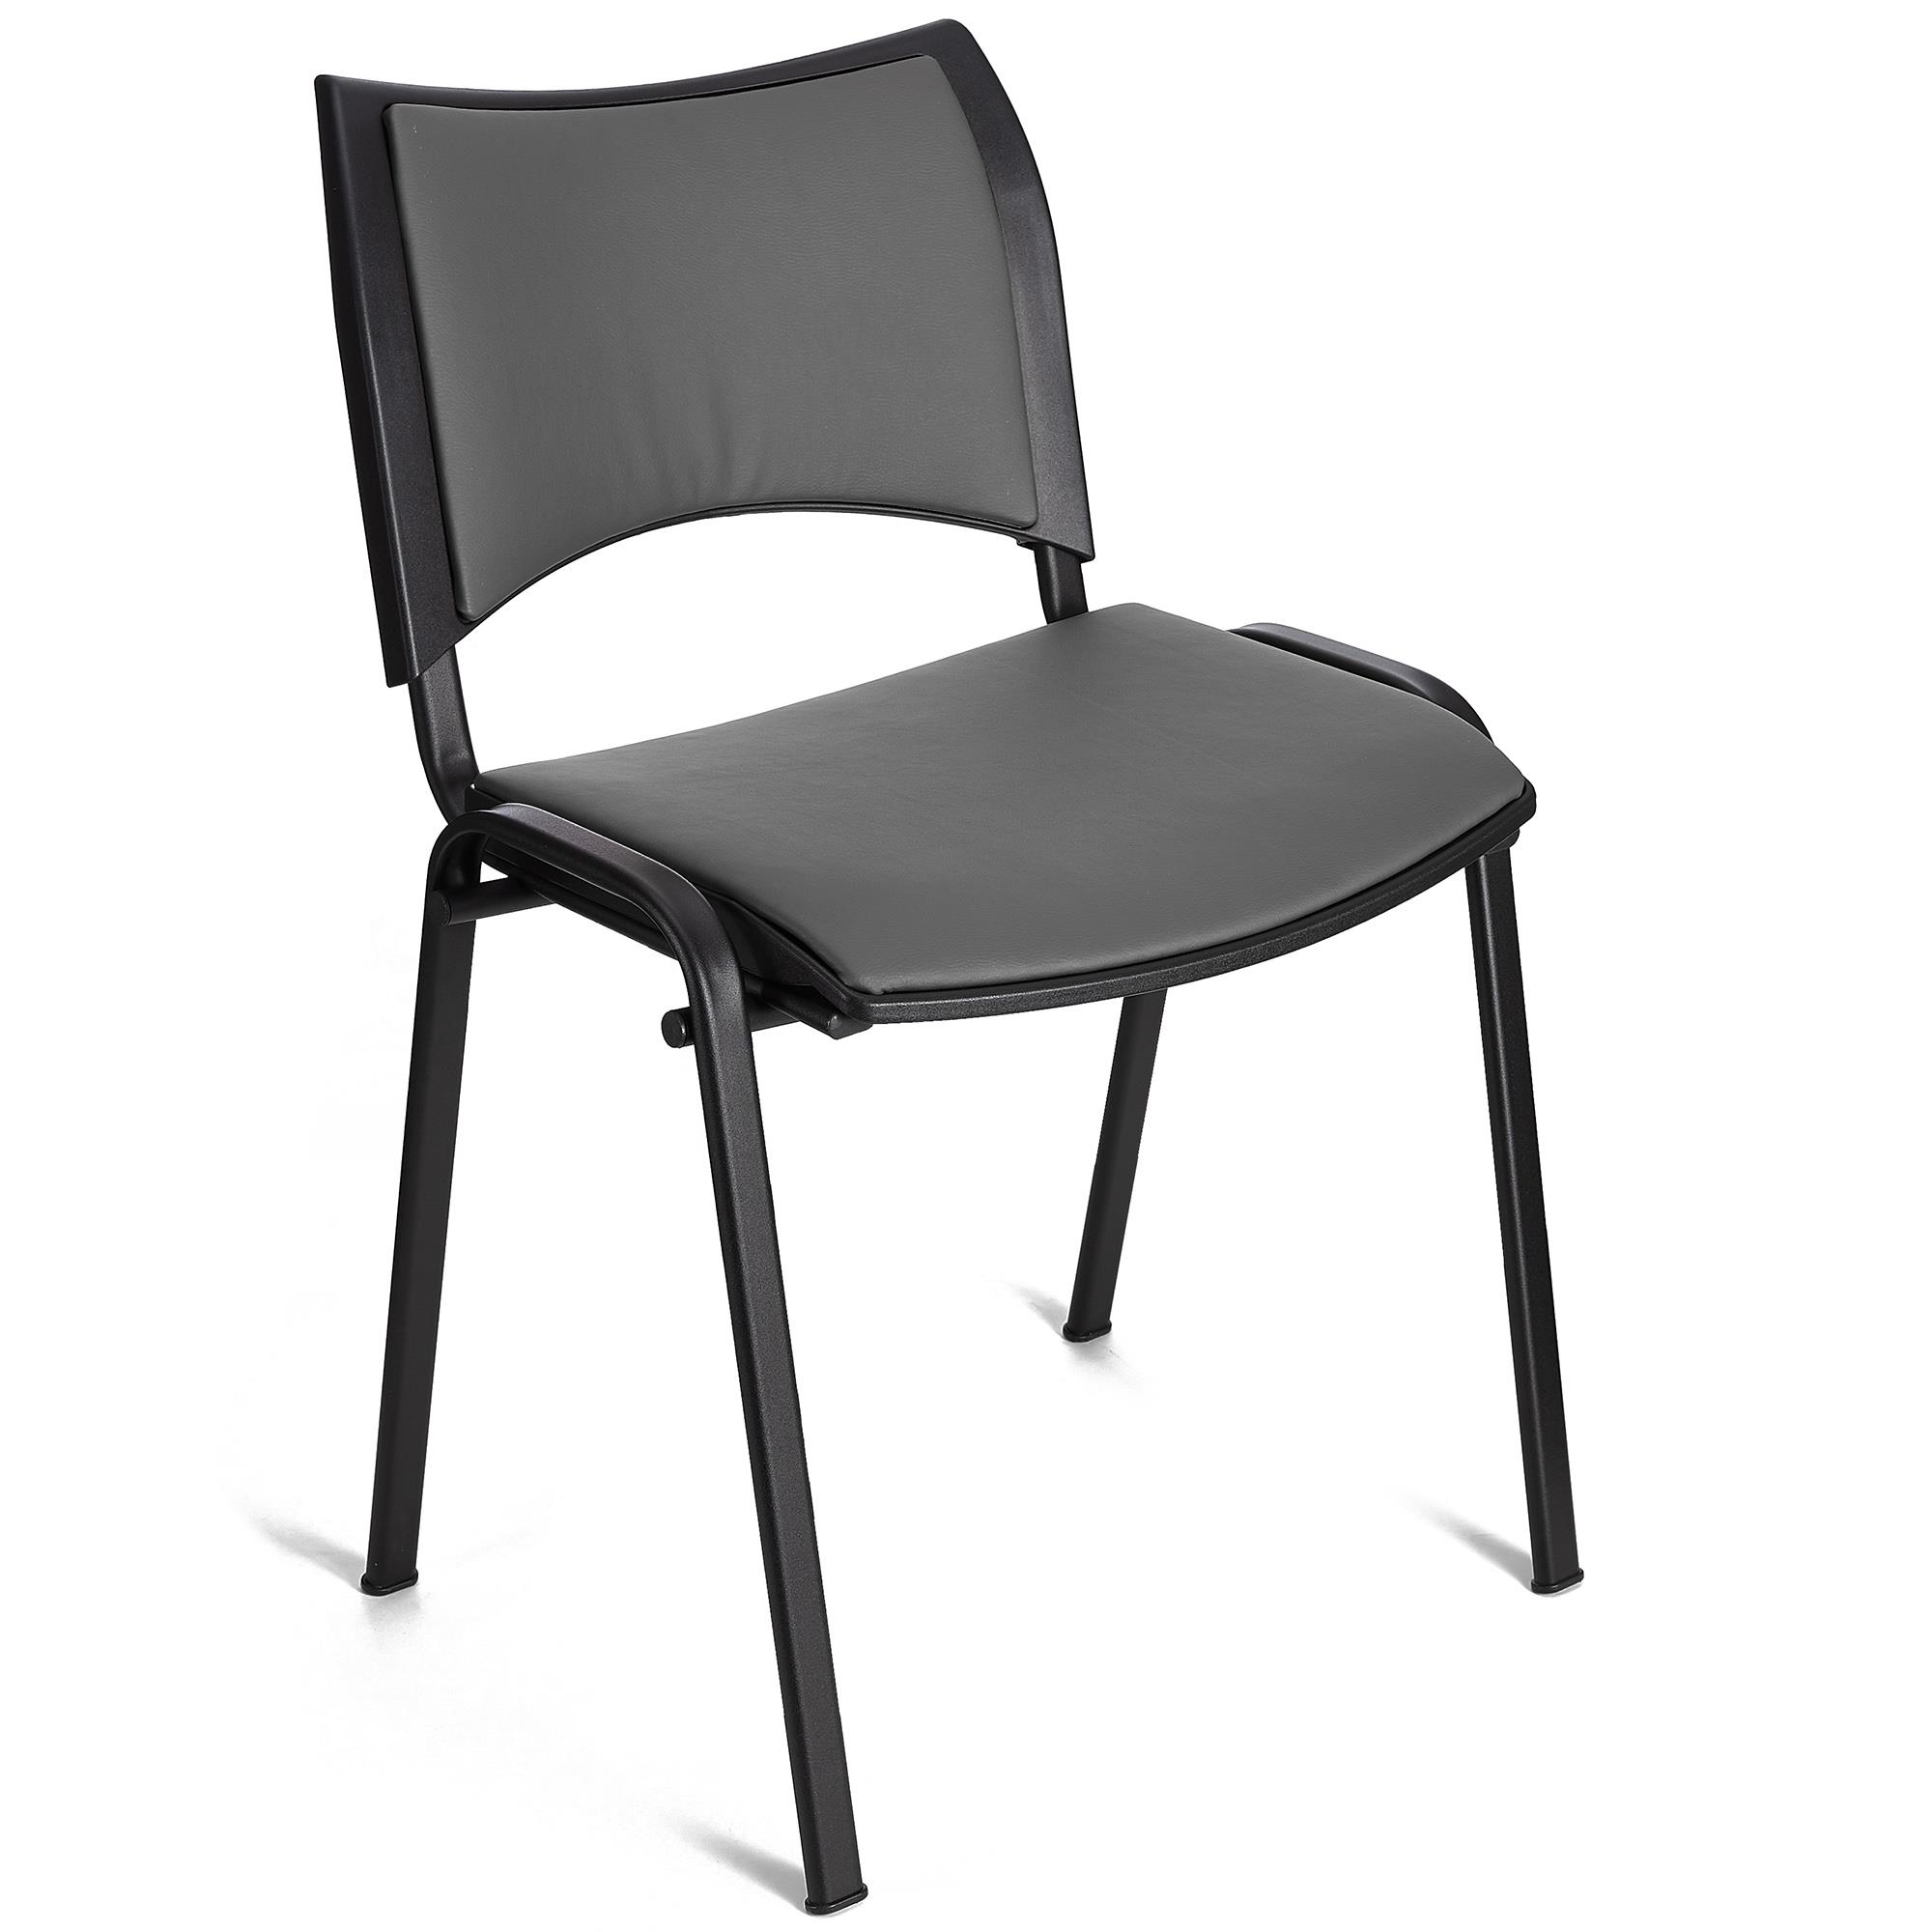 Cadeira de Visita ROMEL PELE, Prática e Empilhável, Pernas Pretas, Cinzento